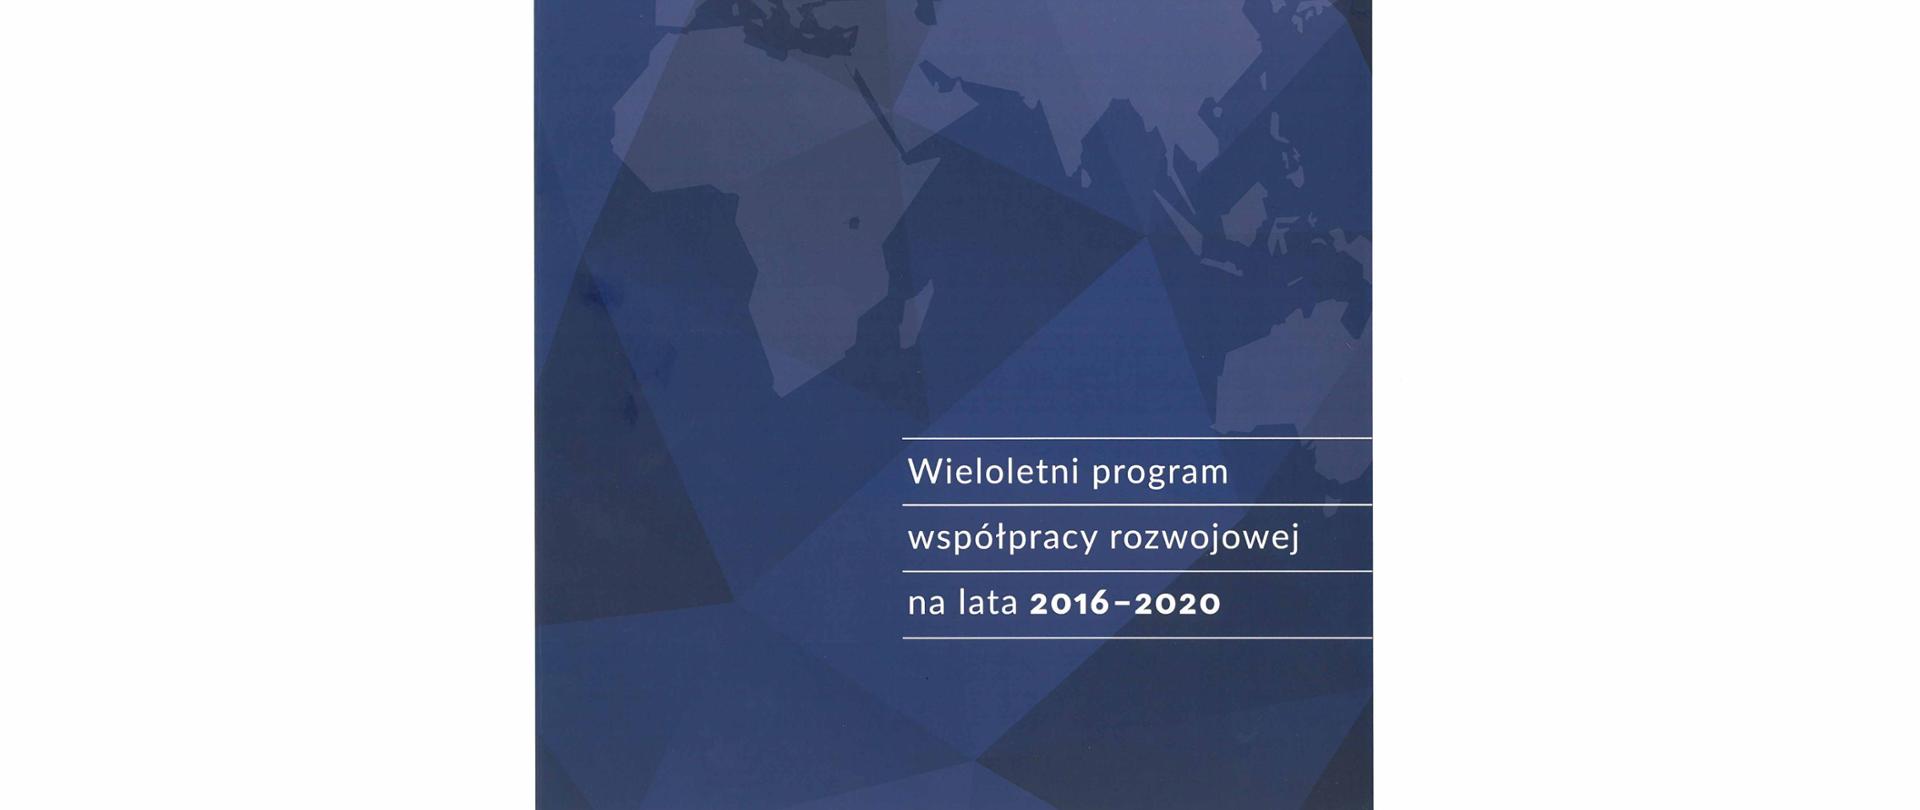 Wieloletni Program Współpracy Rozwojowej na lata 2016-2020